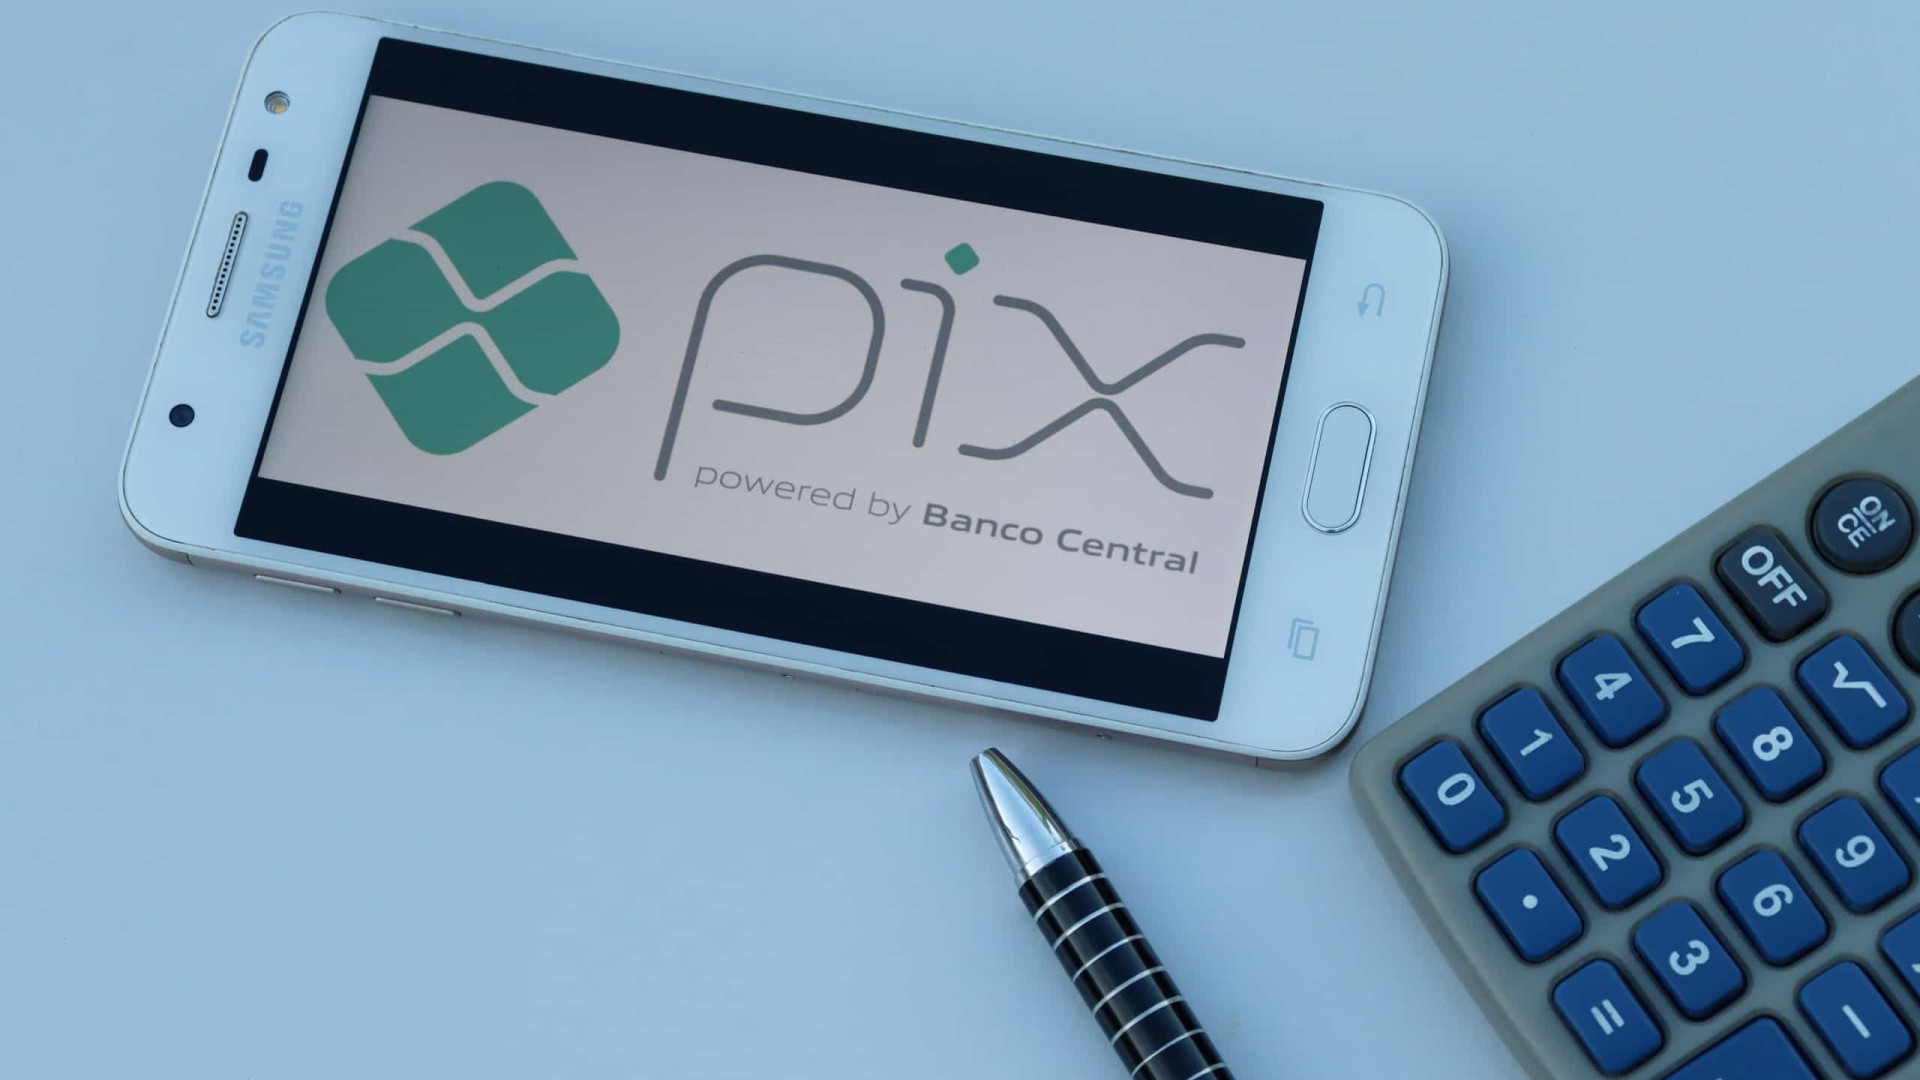 Pix completa dois anos e alcança 70% da população bancarizada